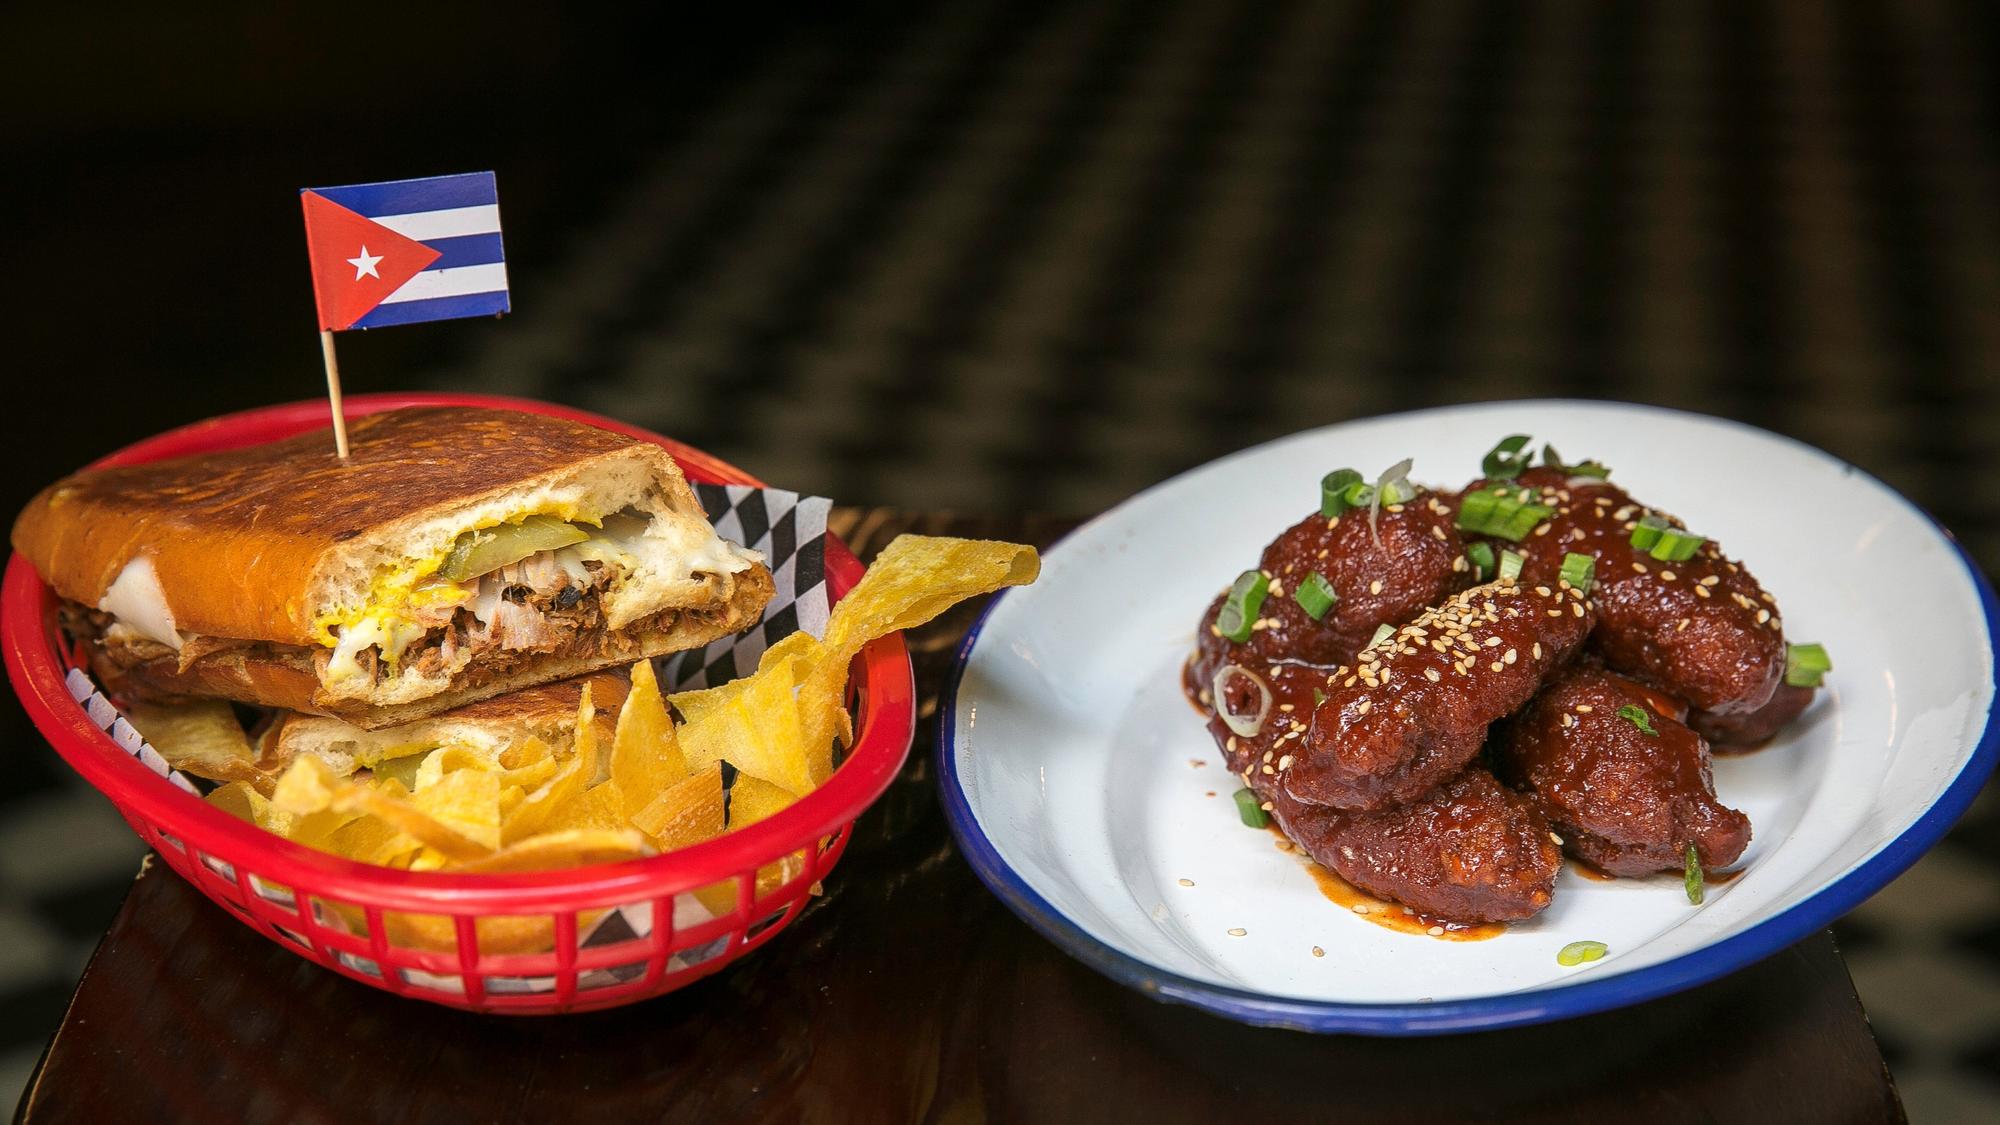 Sándwich cubano del restaurante Matanzas y pollo frito rebozado al estilo coreano del restaurante Lucky Road